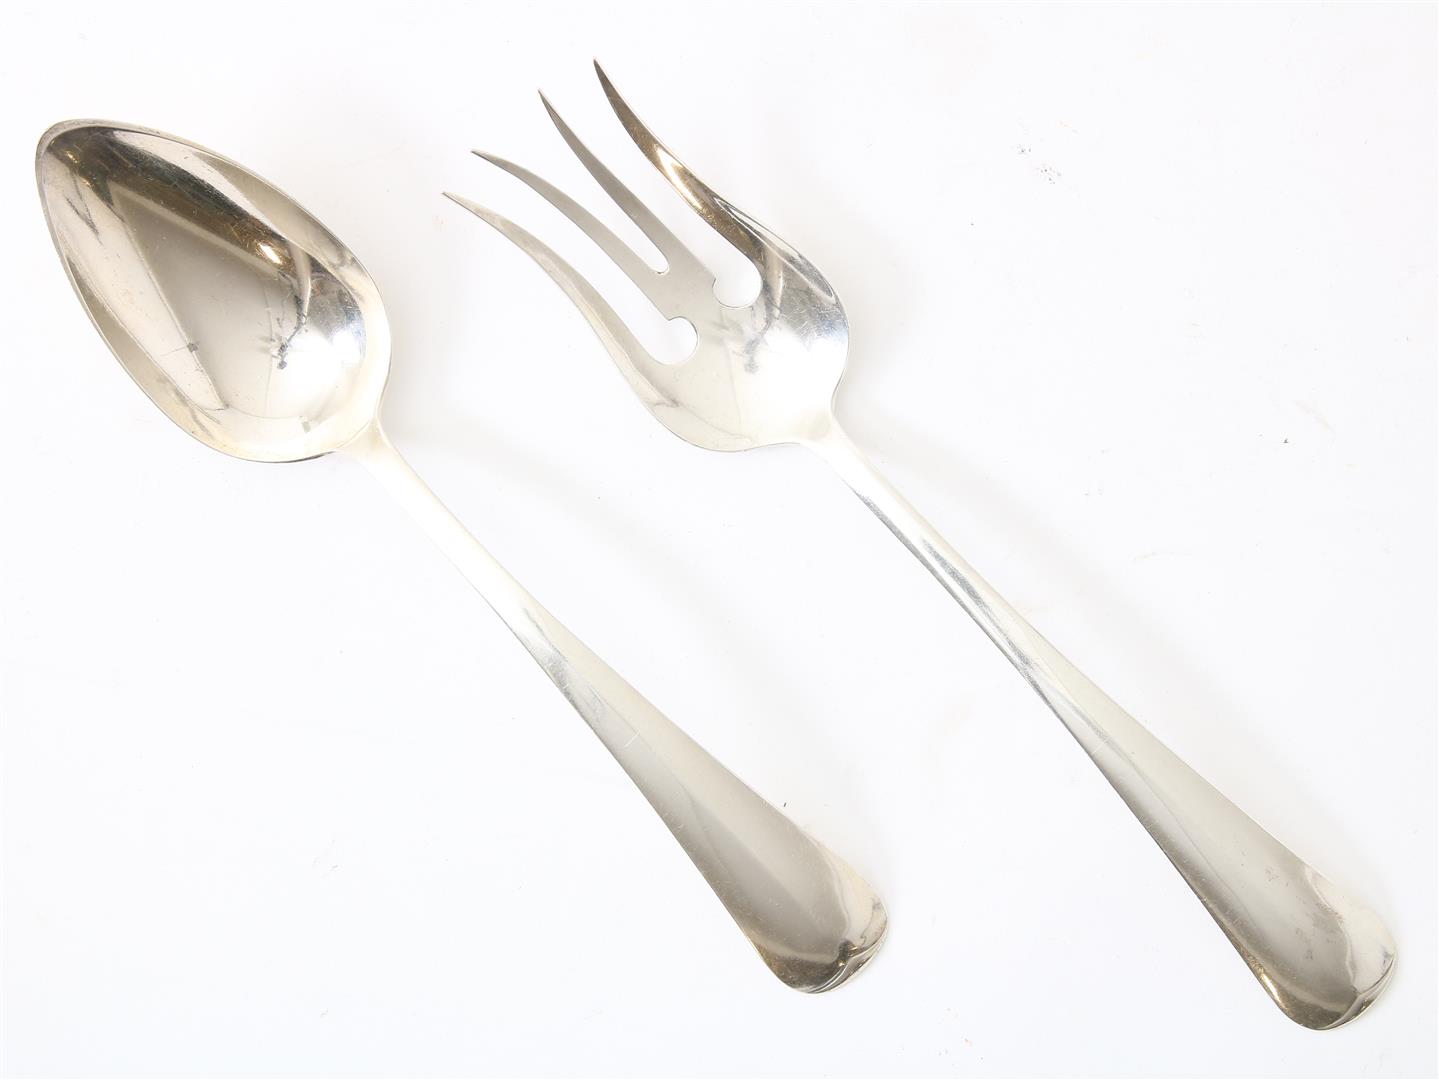 Silver serving cutlery, grade 835/000.